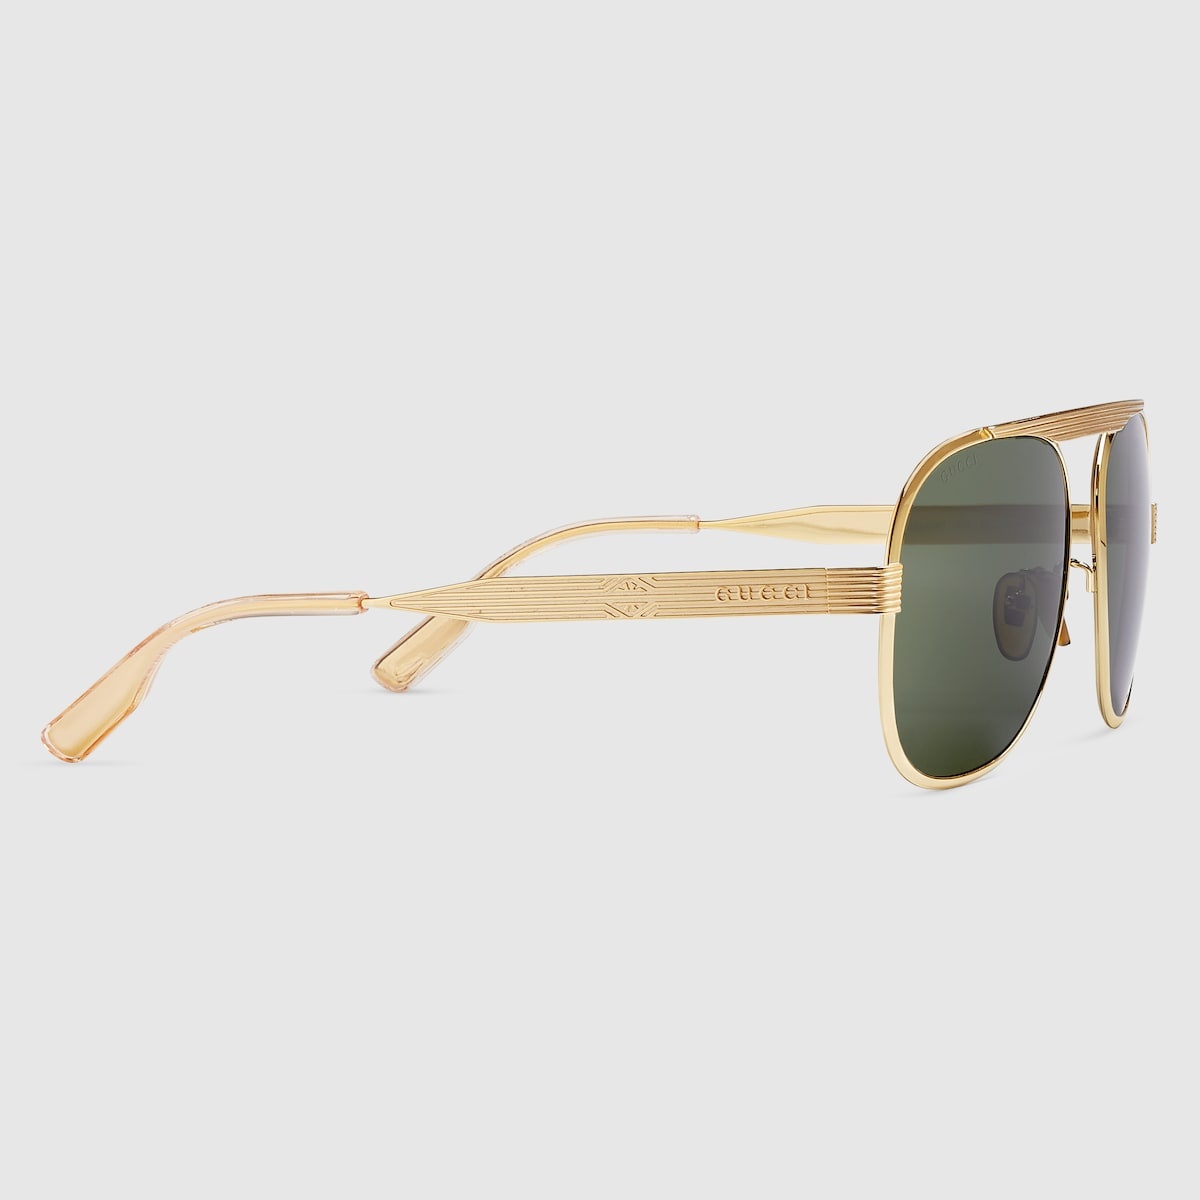 Navigator frame sunglasses - 2